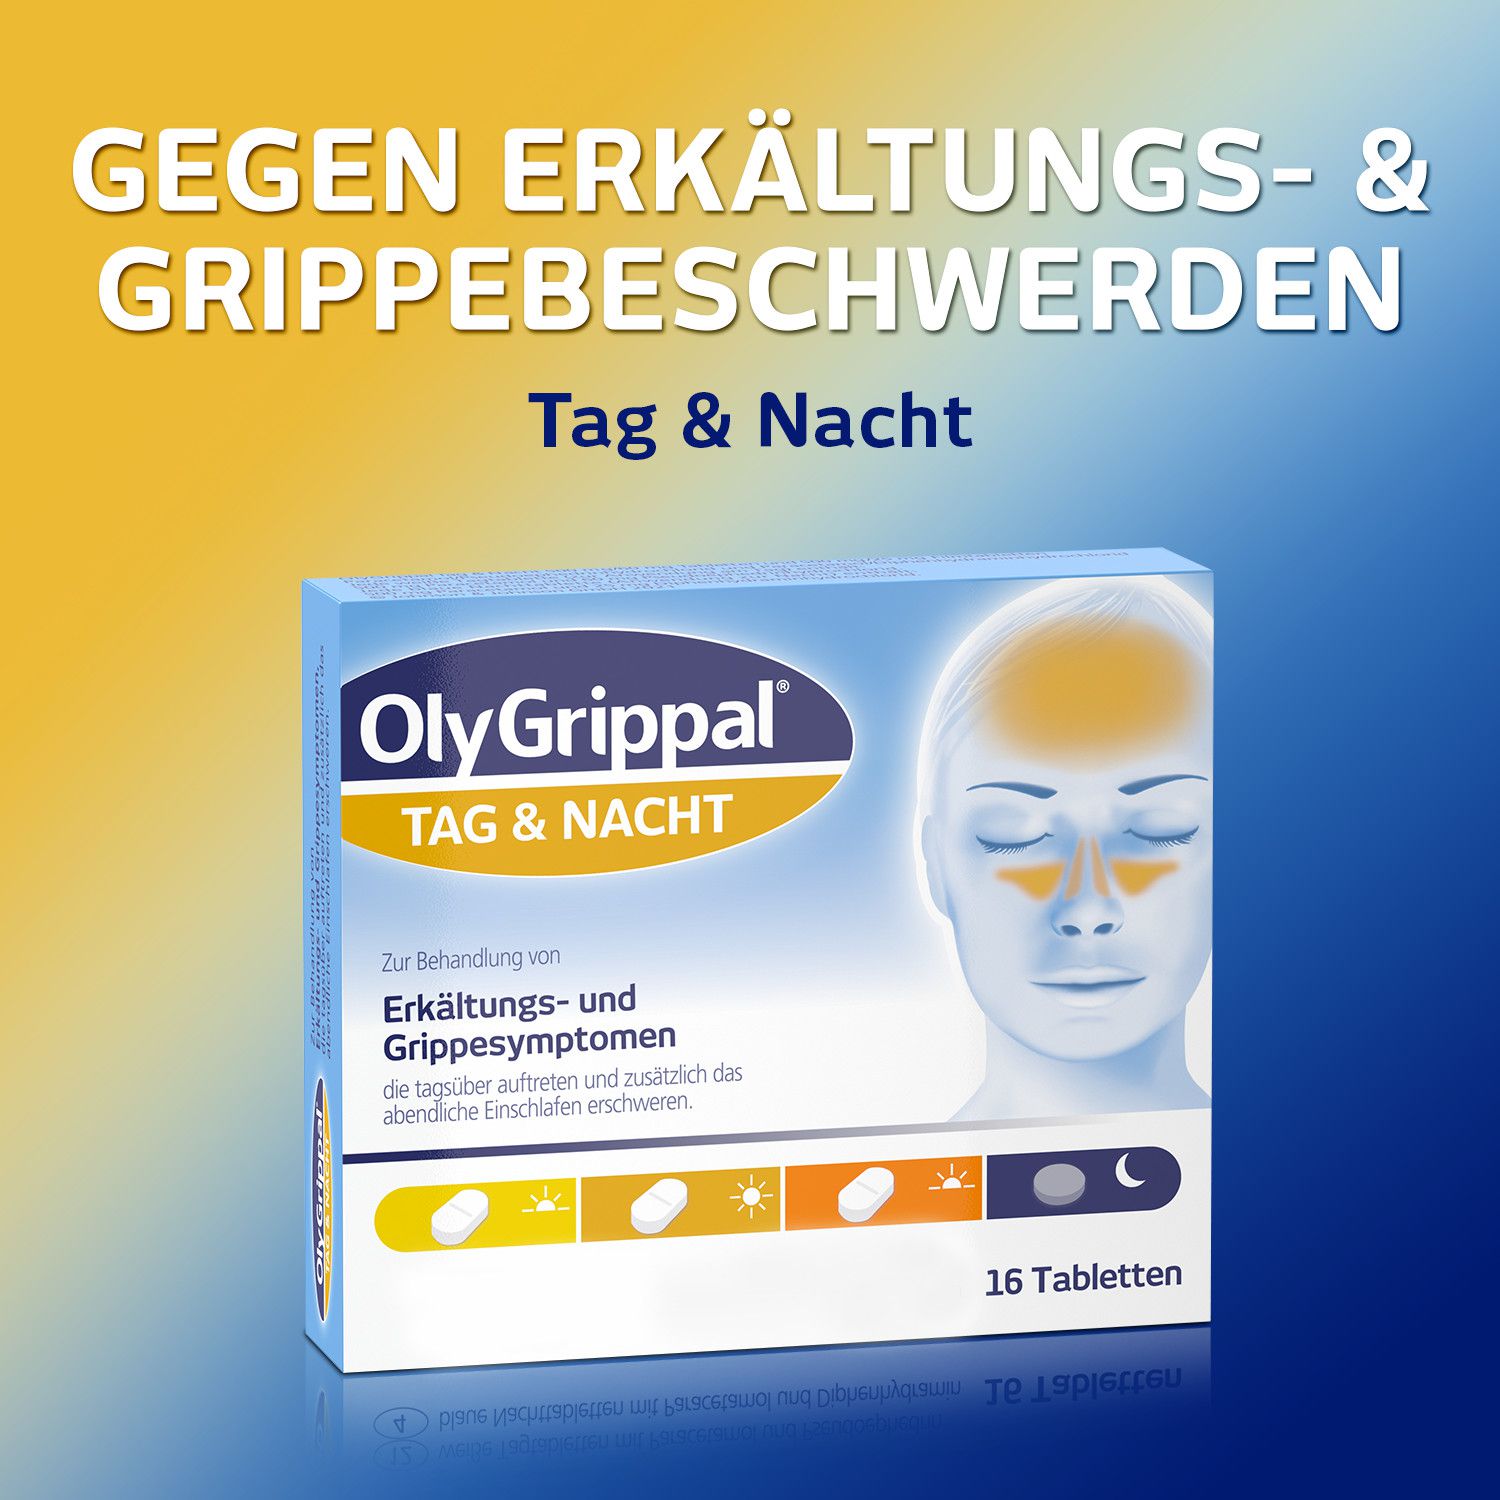 OLYGRIPPAL Tag &amp; Nacht 500 mg/60 mg Tabletten für den Tag und die Nacht zur Behanldung von Erkältungs- und Grippesymptomen